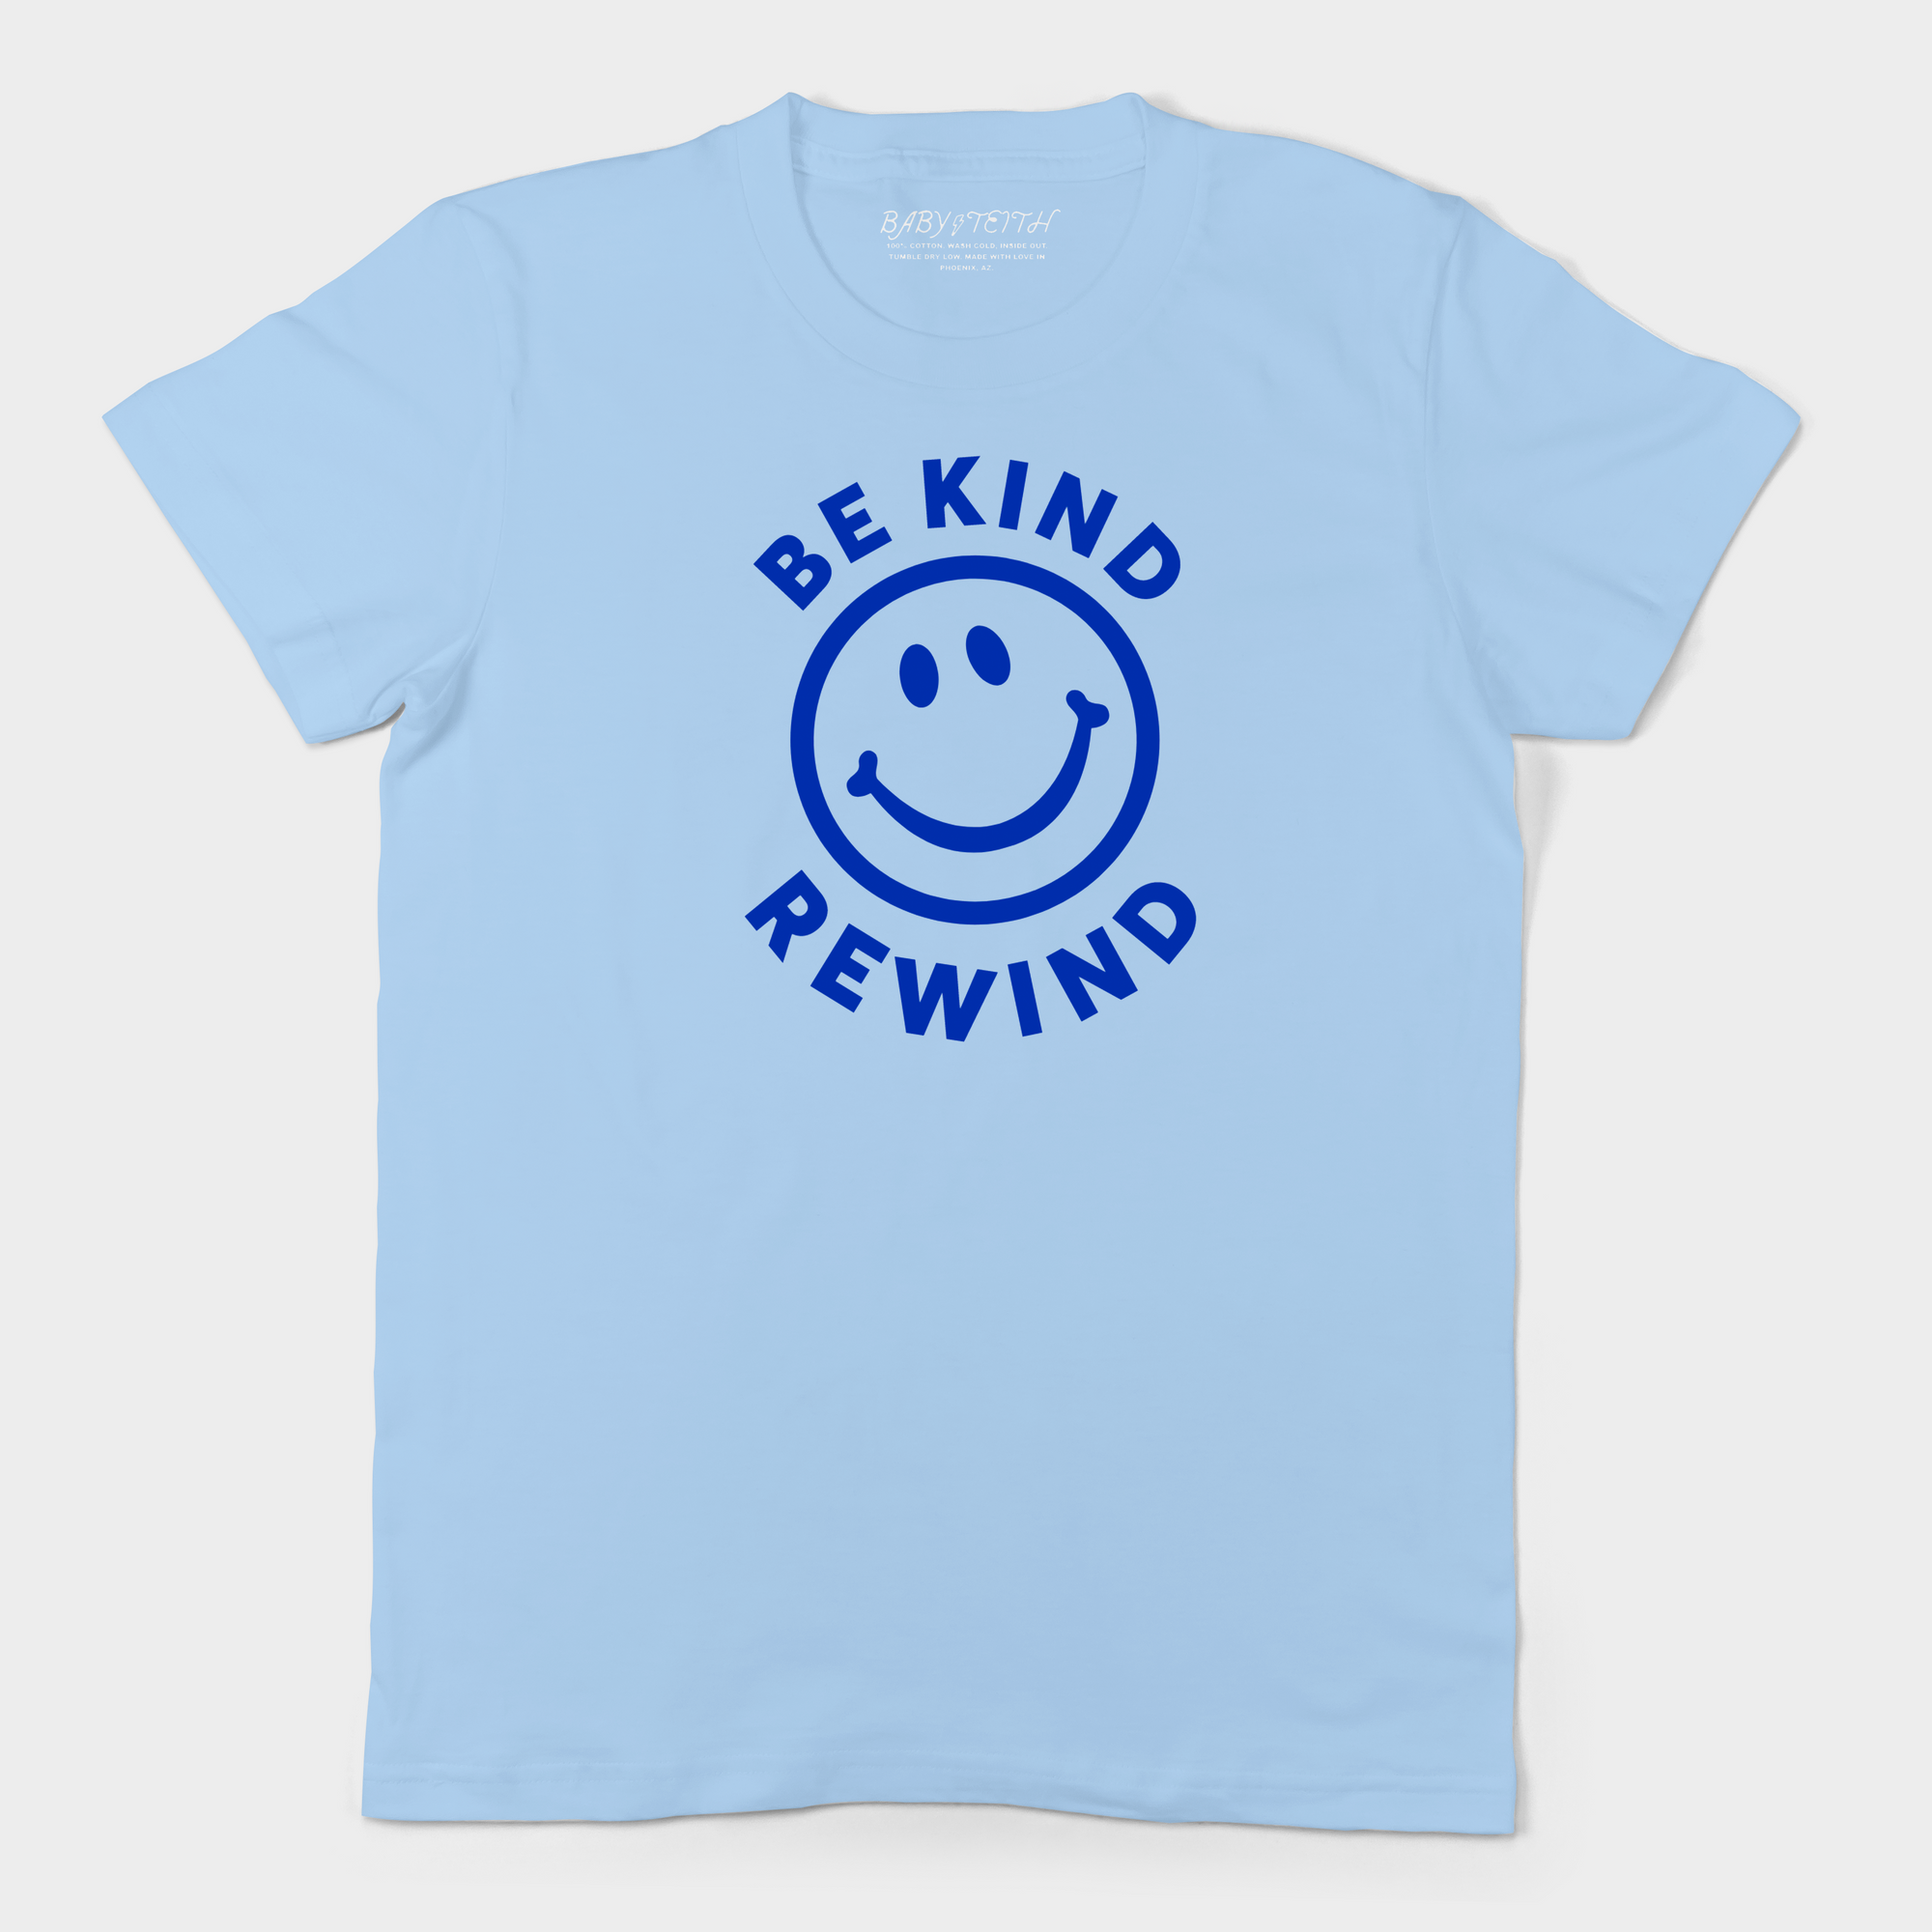 Be Kind Rewind - Unisex Tee (2 colors)